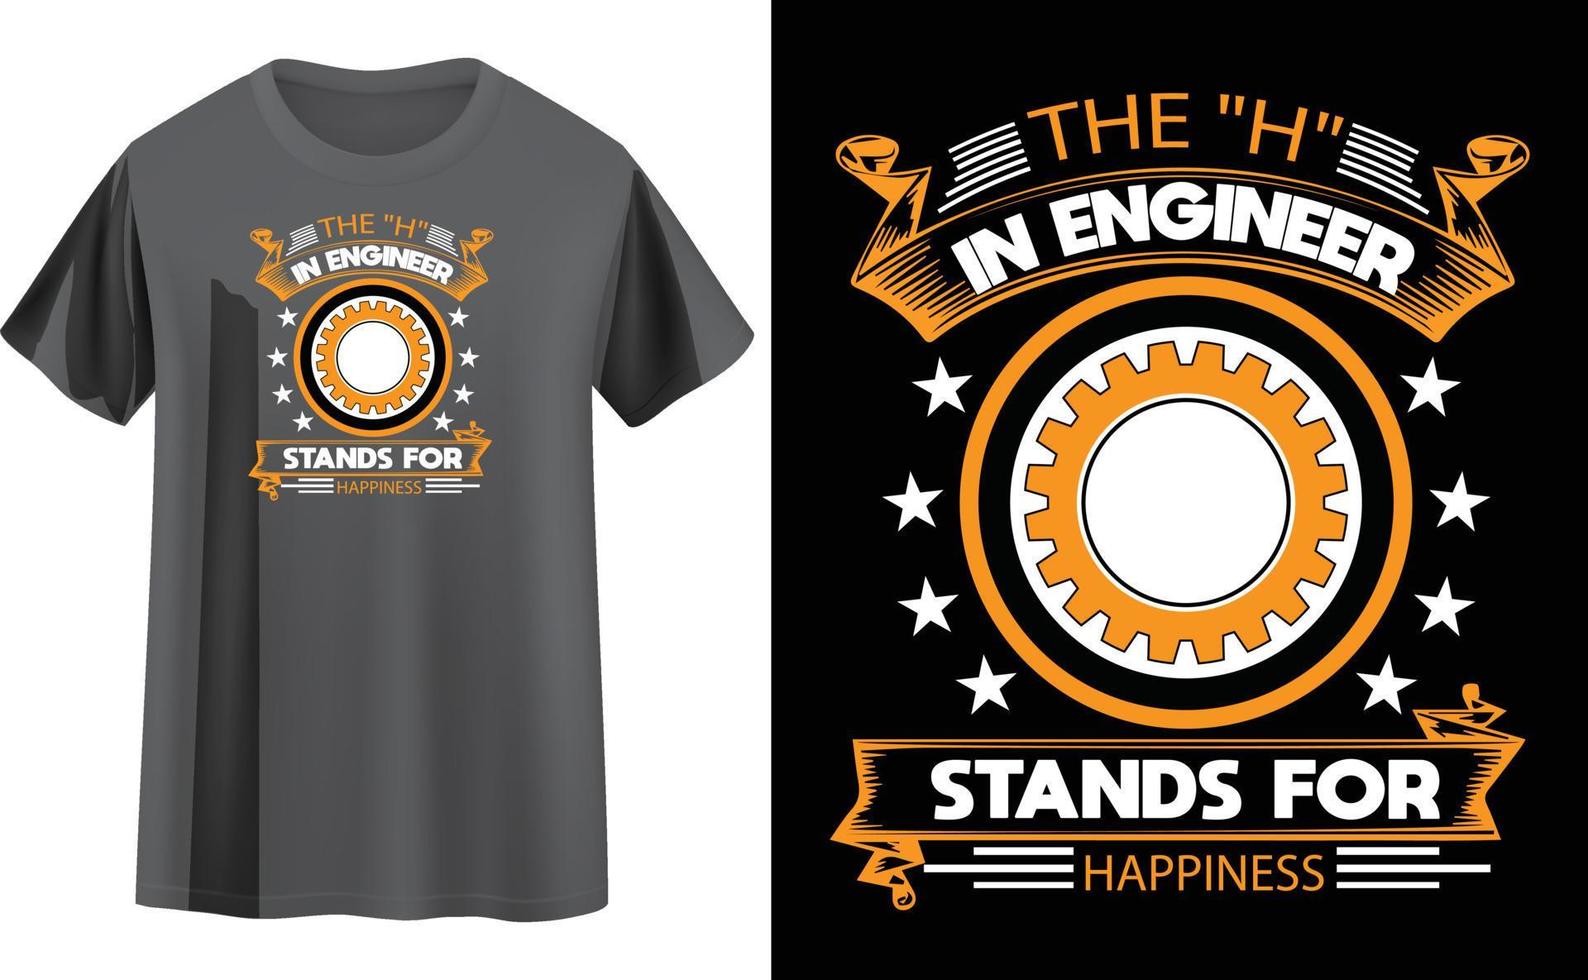 ingenieur t-shirt ontwerp vector